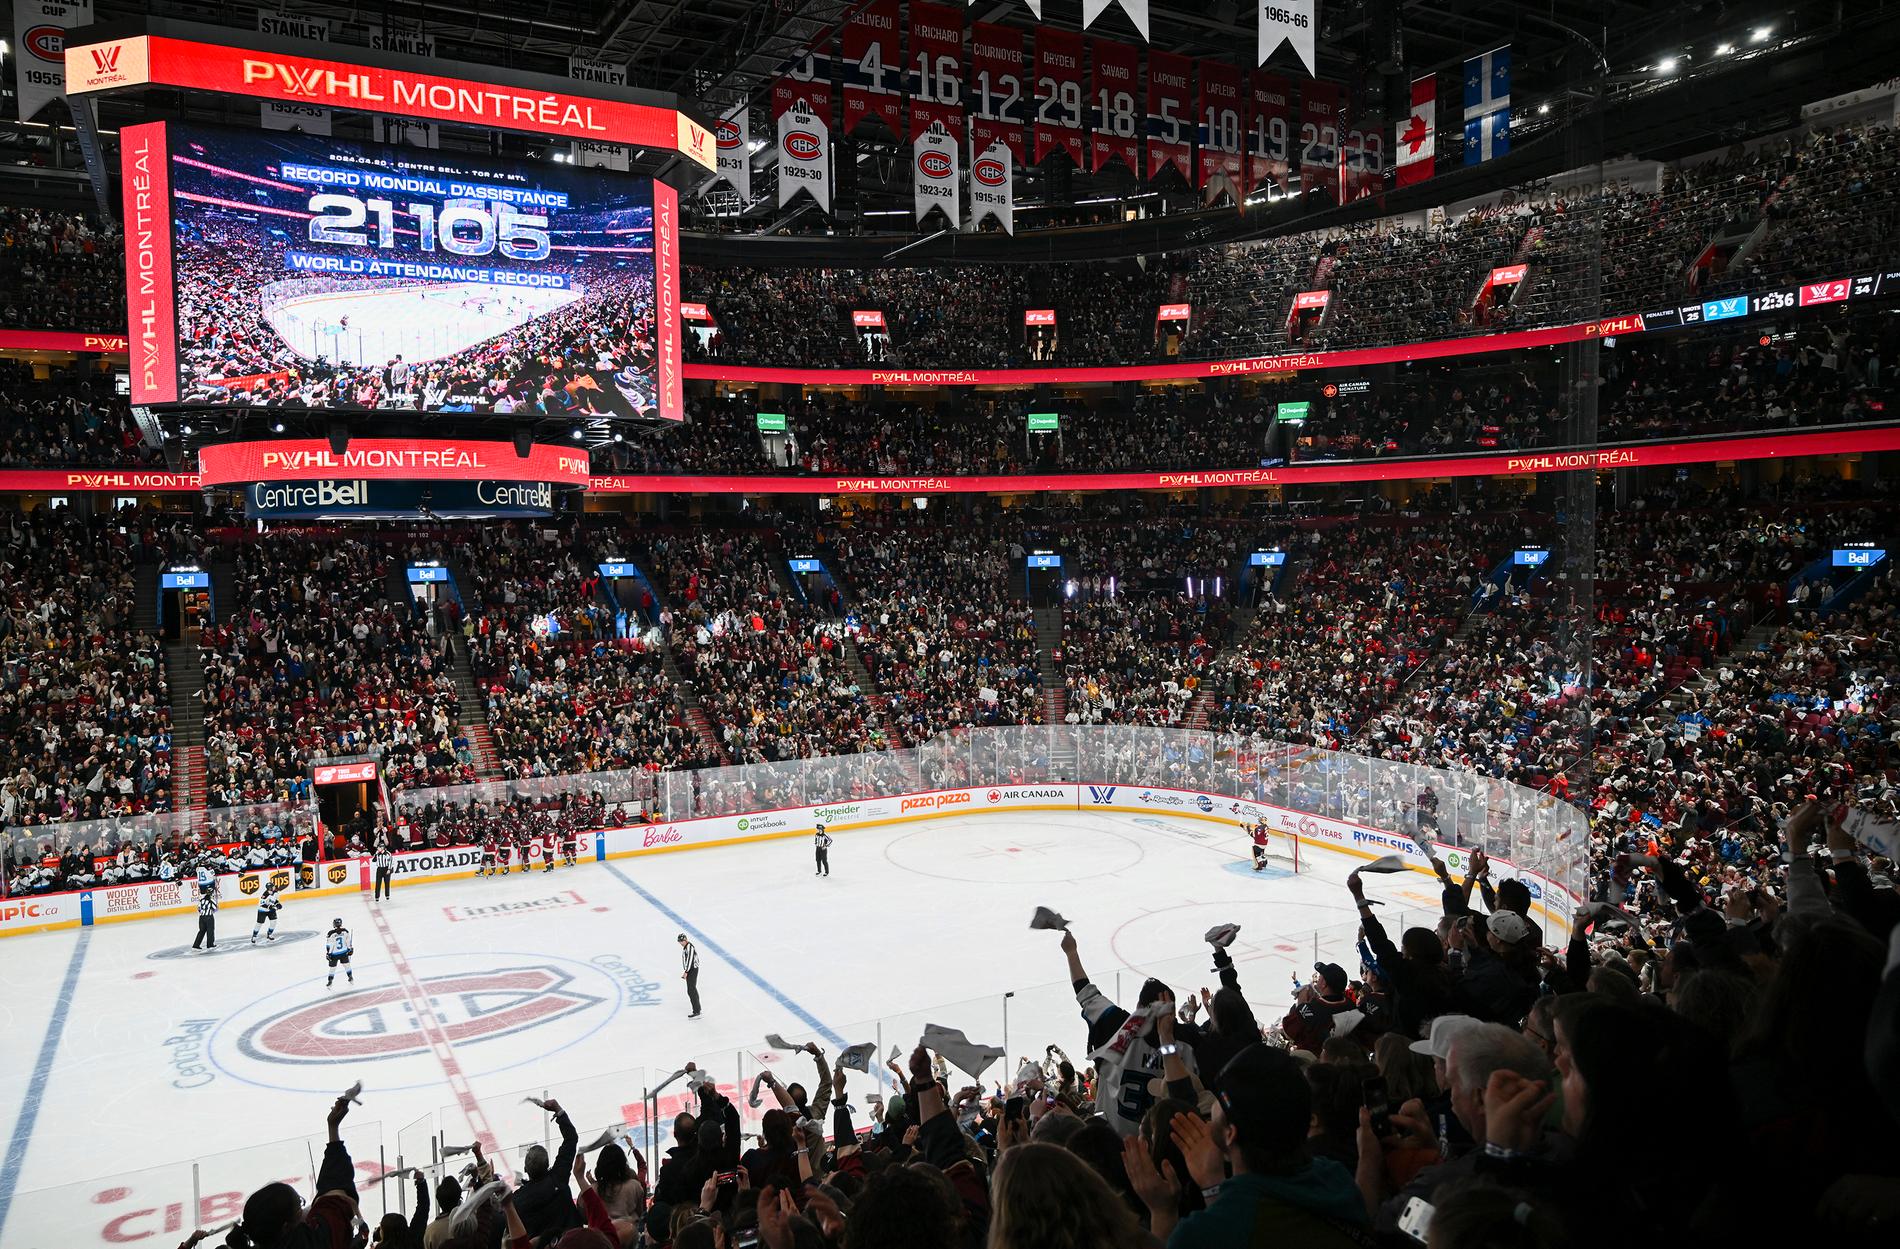 Det kom 21 105 åskådare till Bell Center i mötet mellan Montreal och Toronto i PWHL – nytt världsrekord för damhockey.